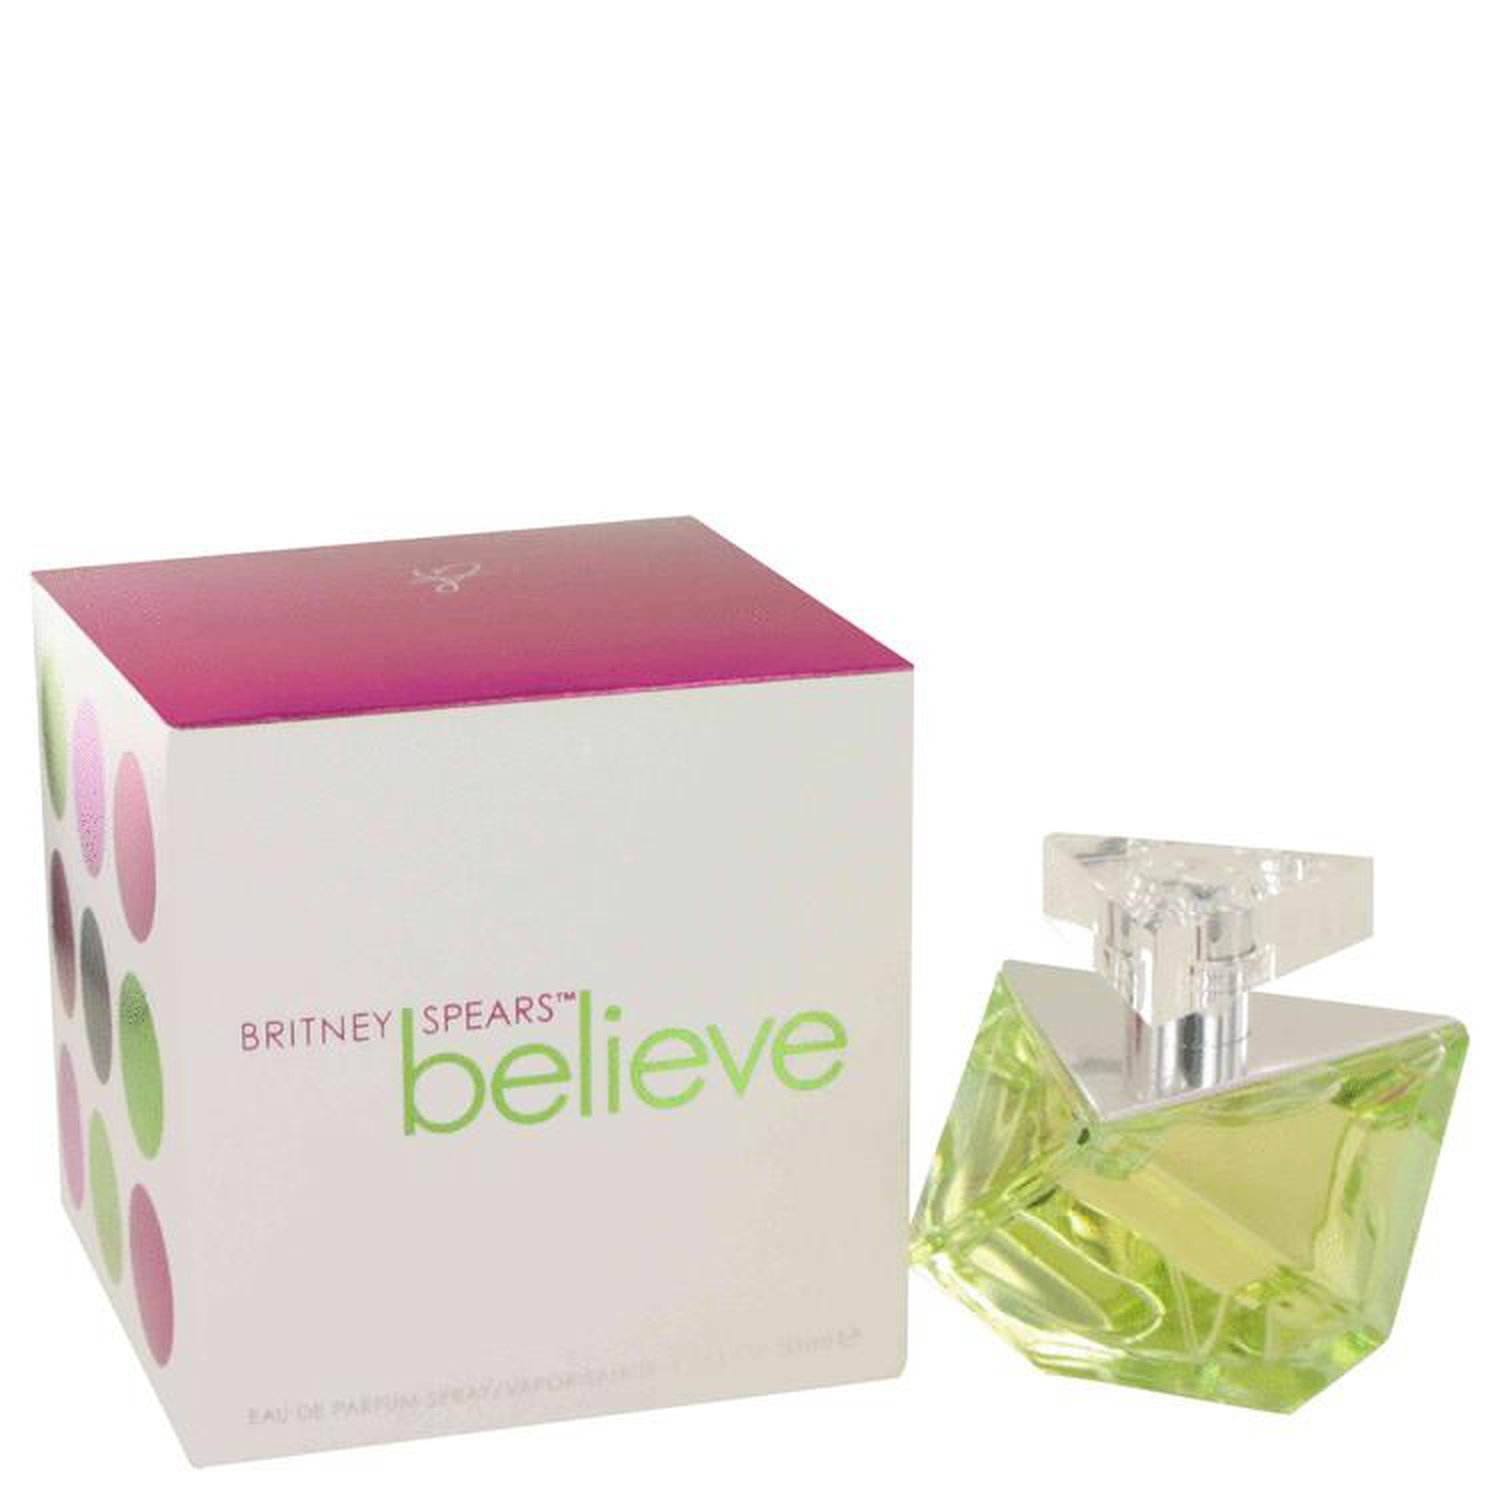 Britney Spears Believe Eau de Parfum Spray for Women, 1.7 Oz